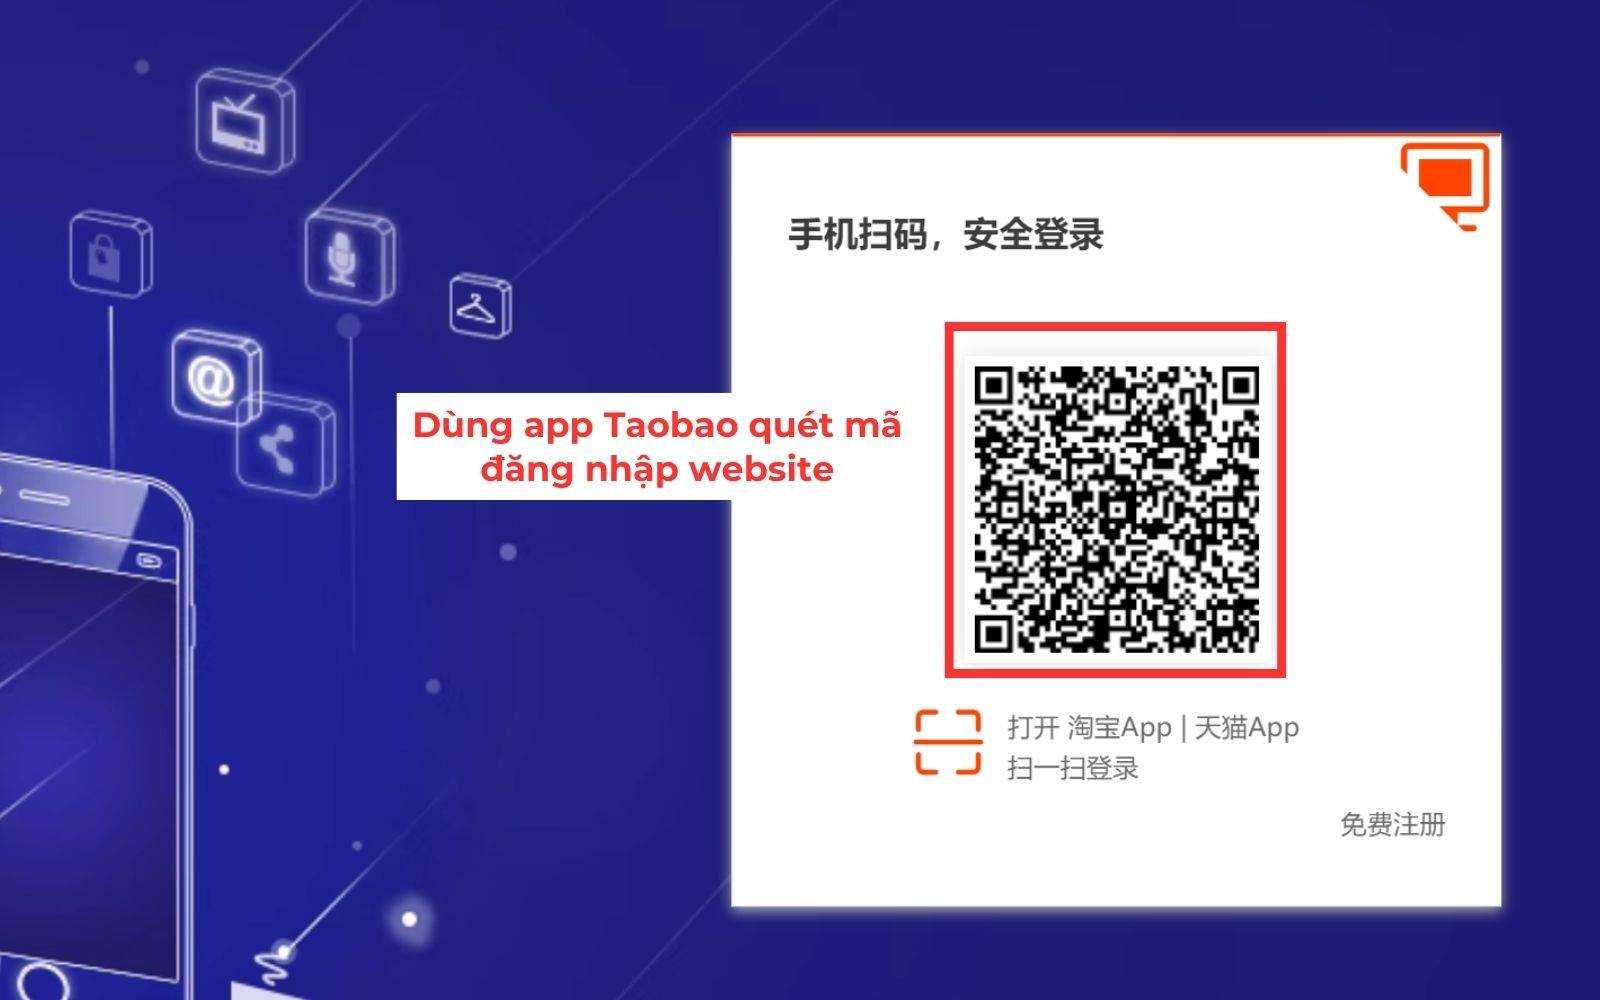 Scan quét mã đăng nhập tài khoản trên web Taobao.com bằng điện thoại